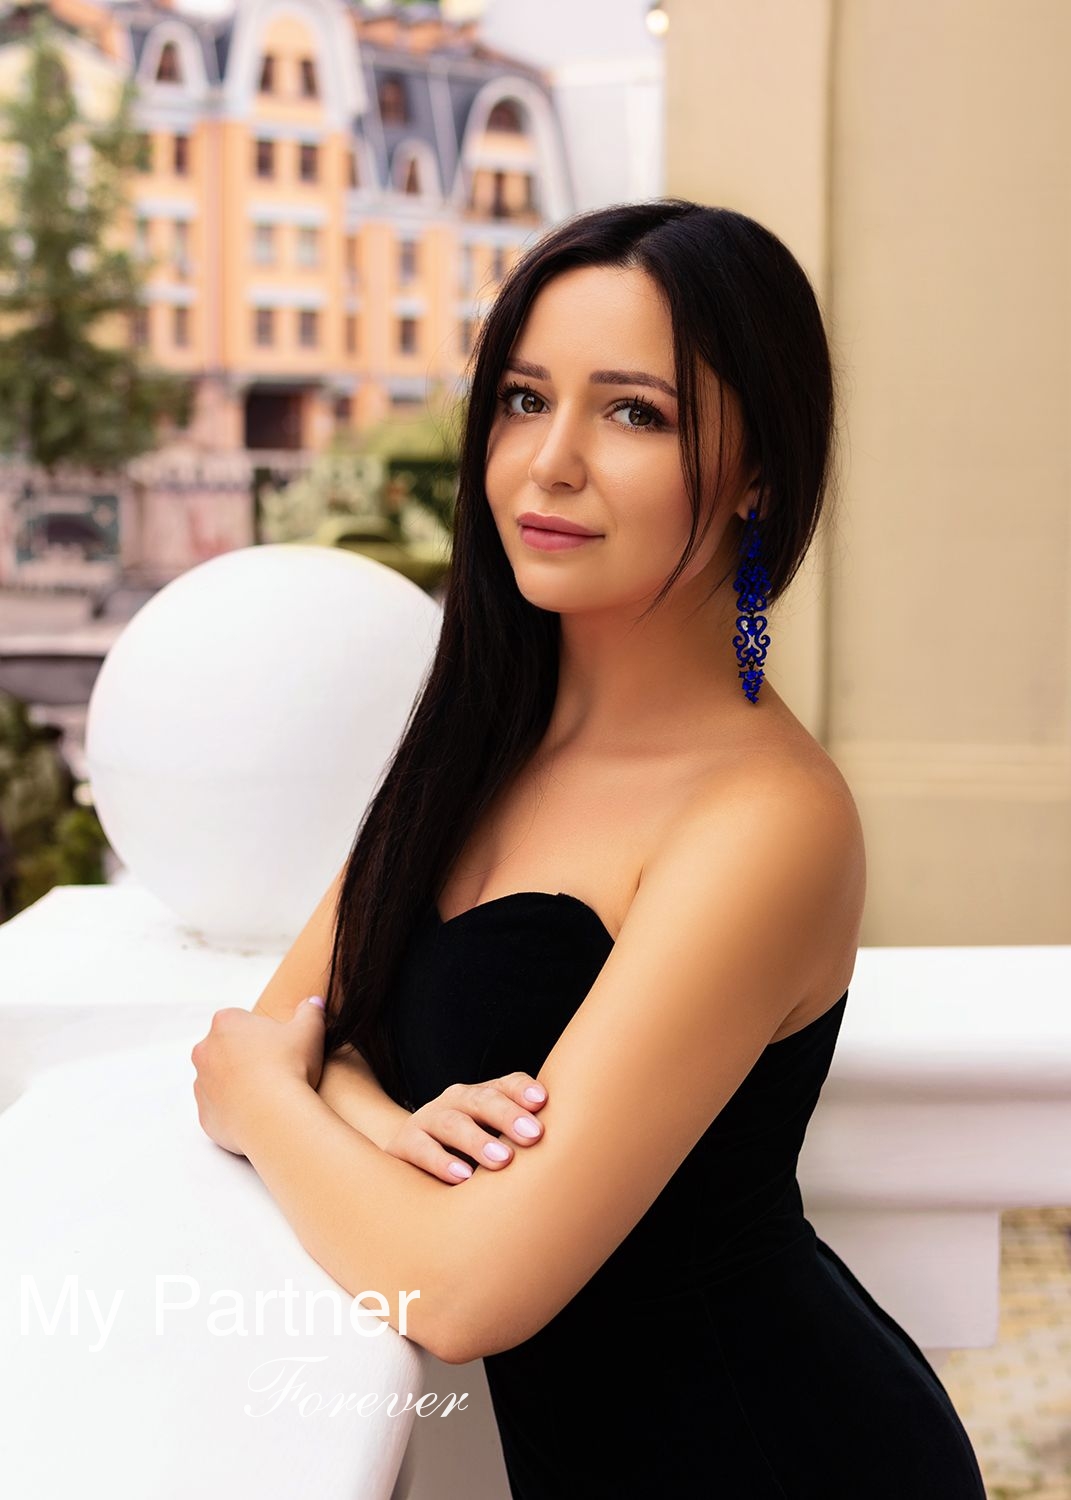 Sexy Lady from Ukraine - Polina from Kiev, Ukraine